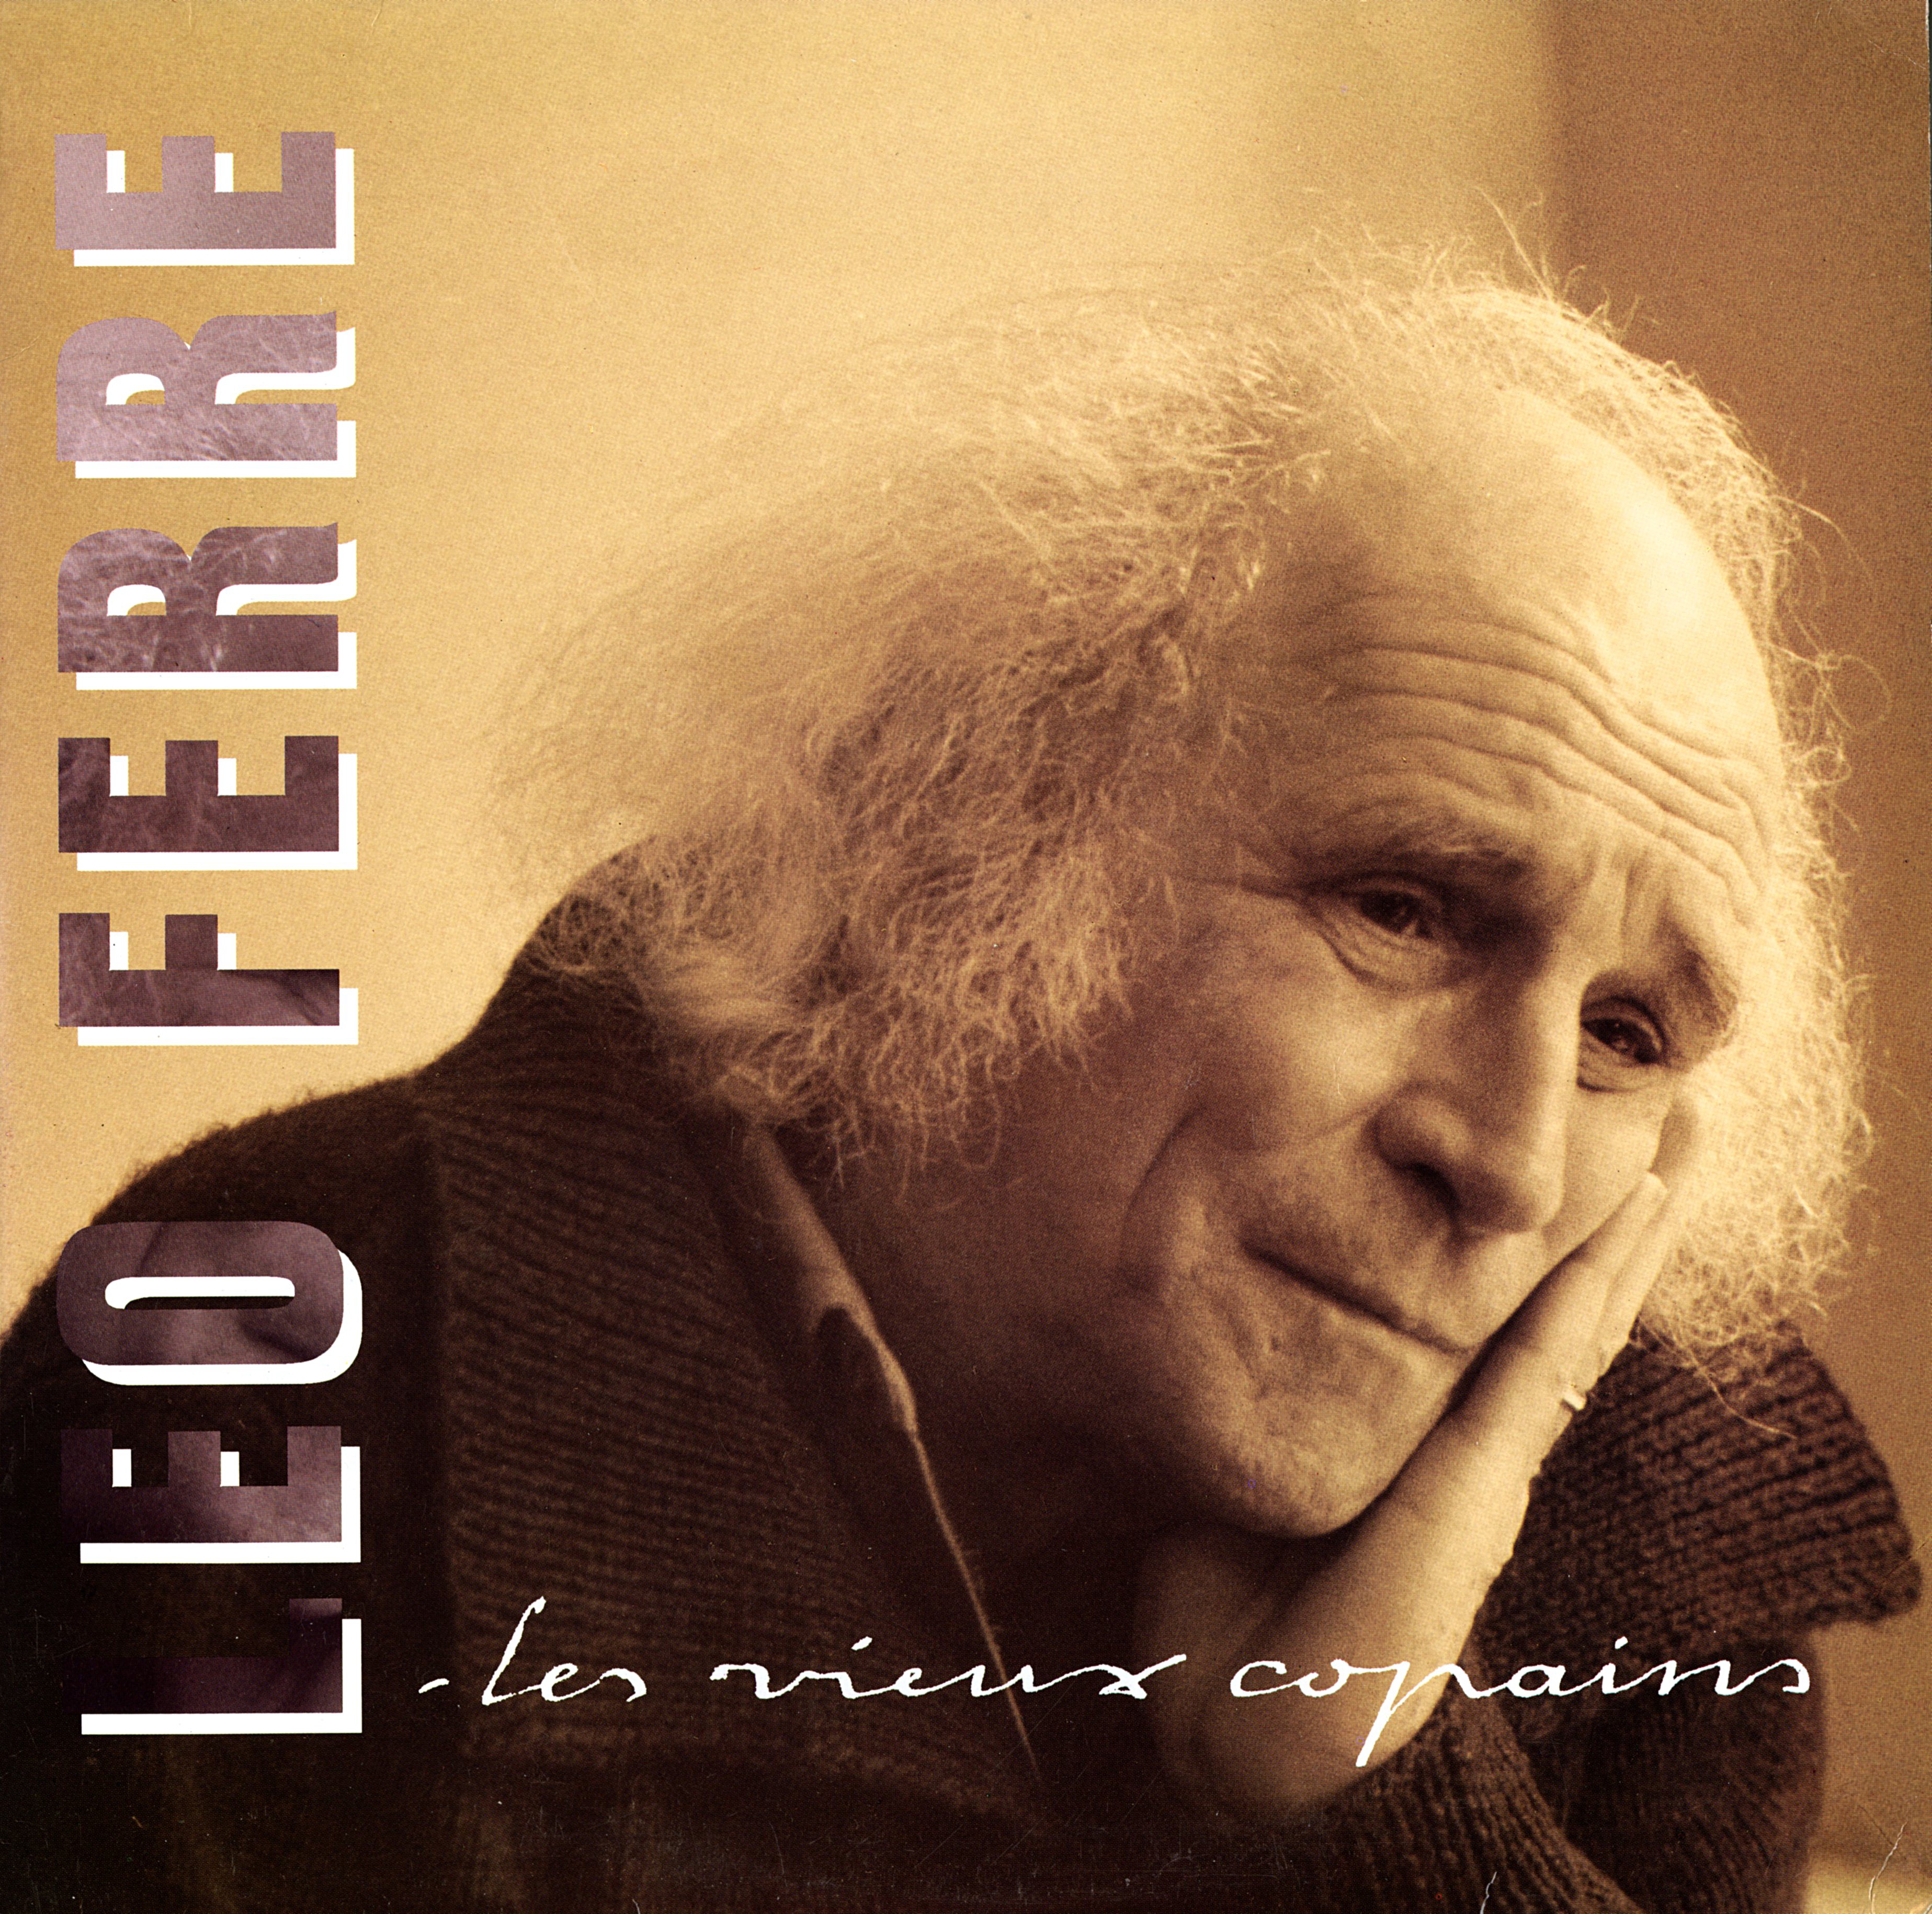 Léo Ferré - Les vieux copains